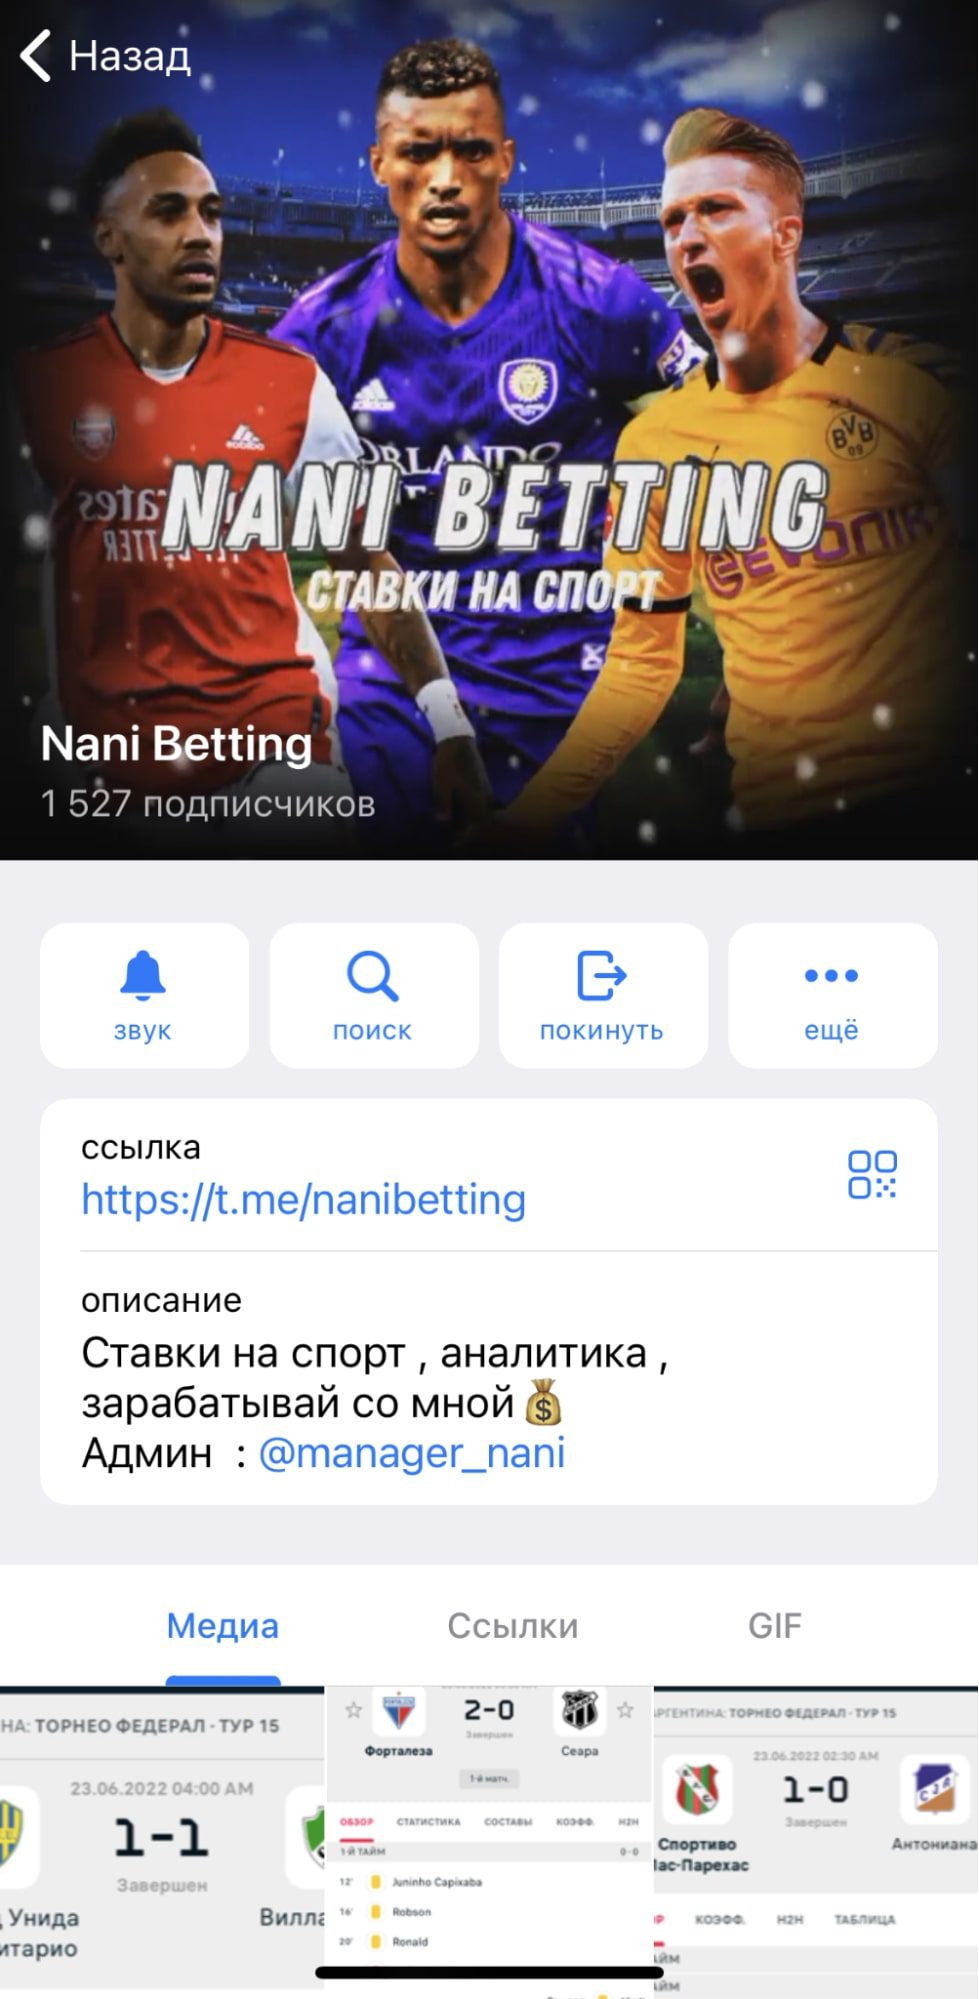 Nani Betting - Телеграмм канал